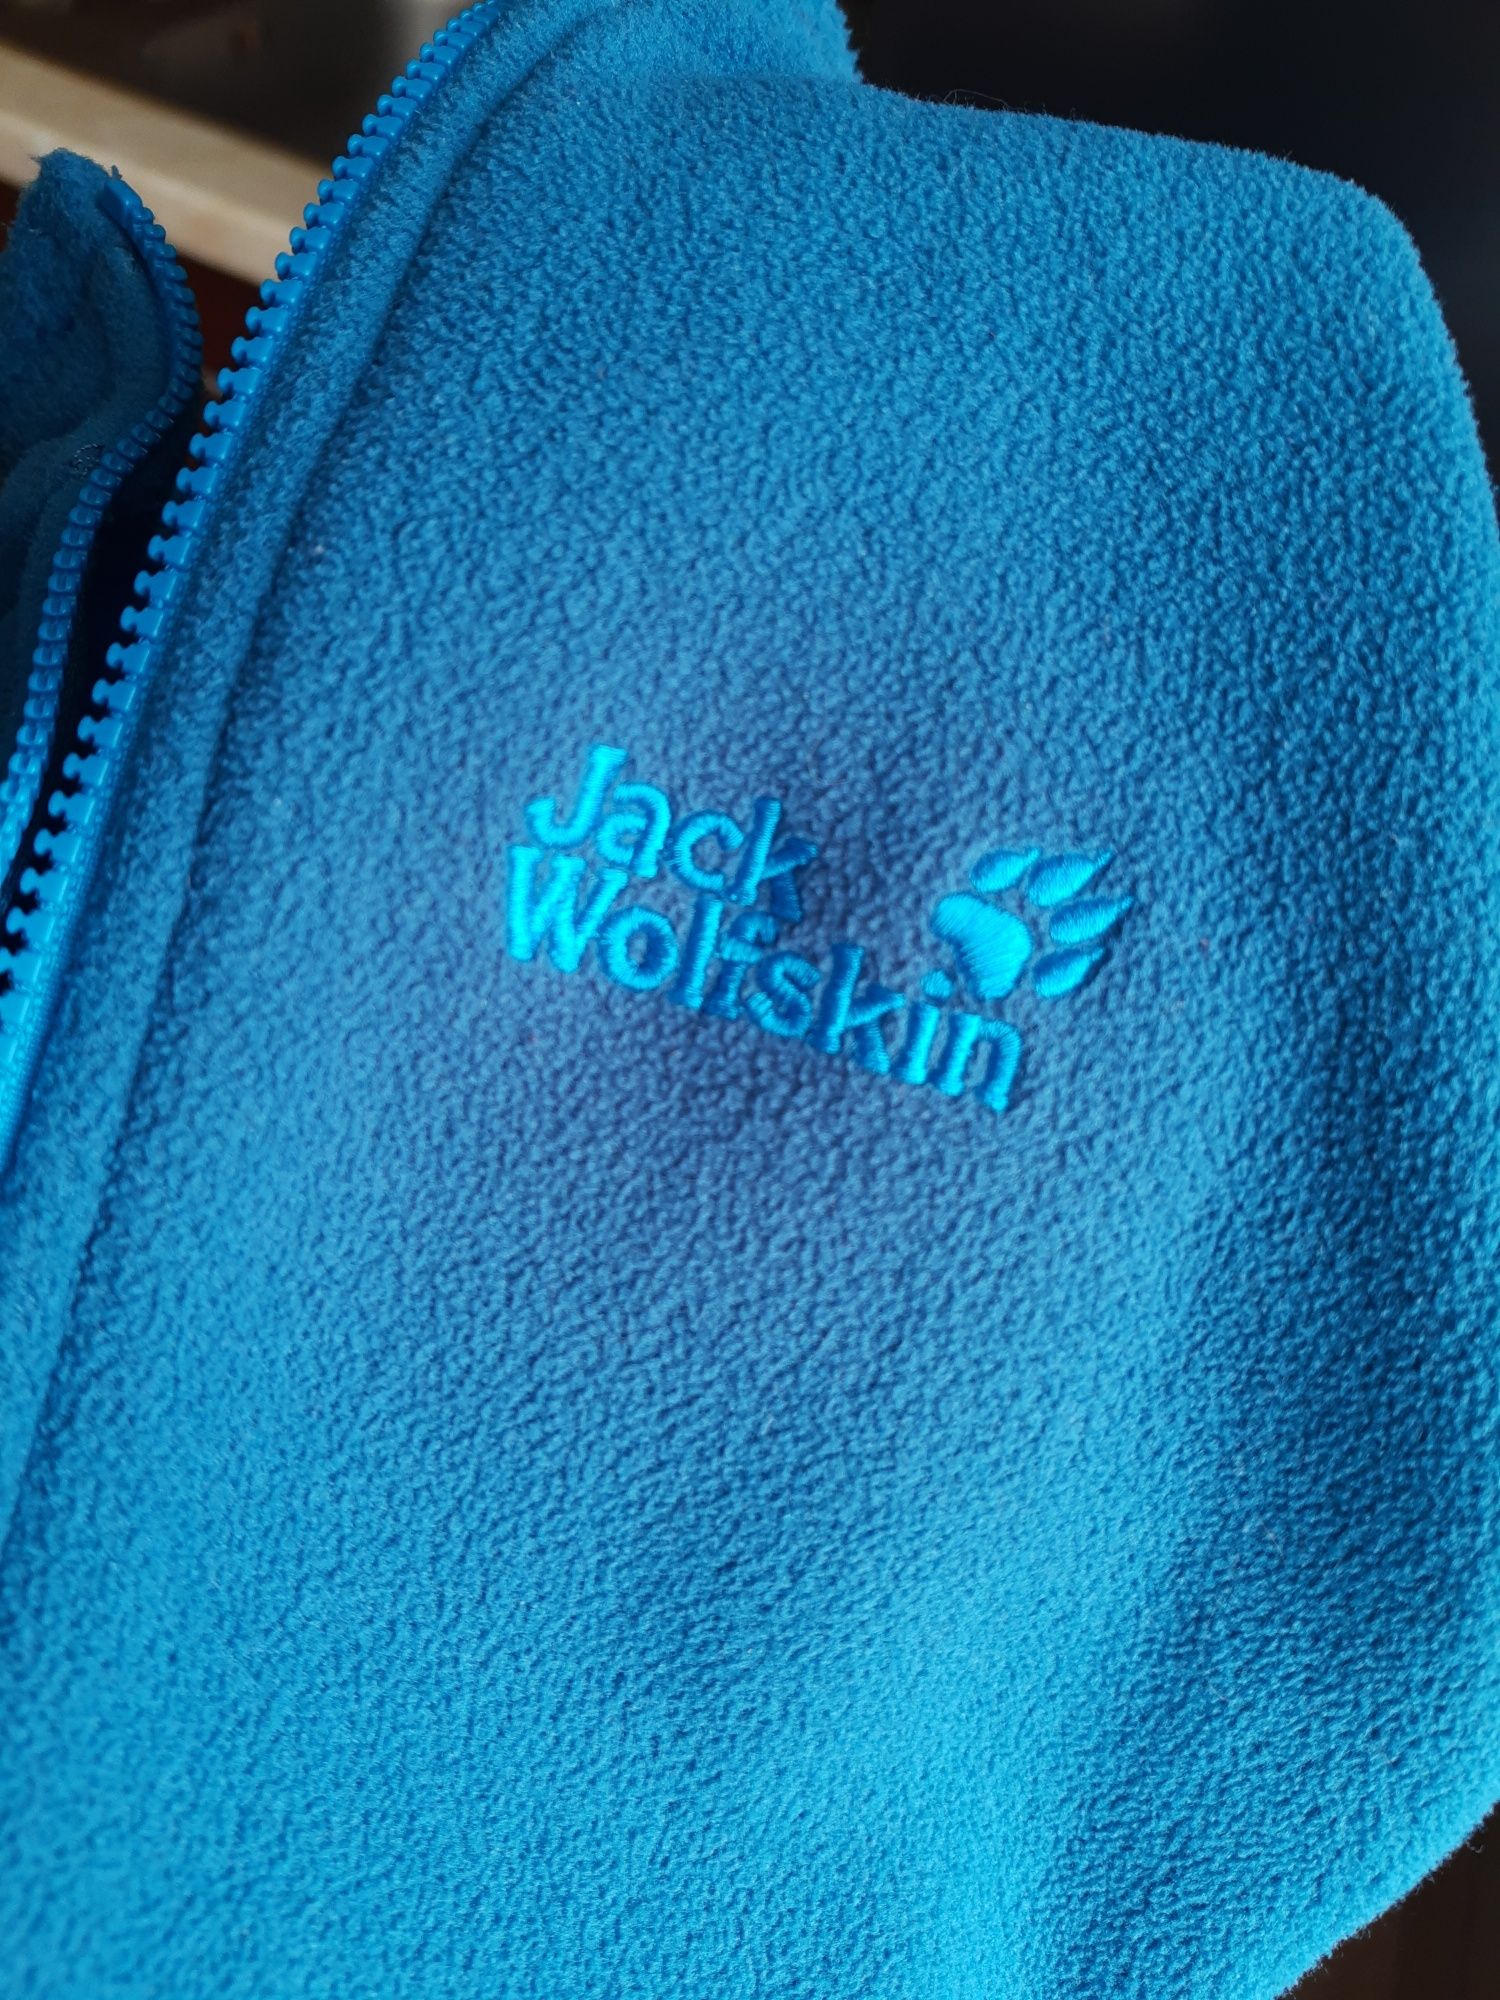 Ciepła Bluza polarowa zasuwana na suwak marki Jack Wolfskin